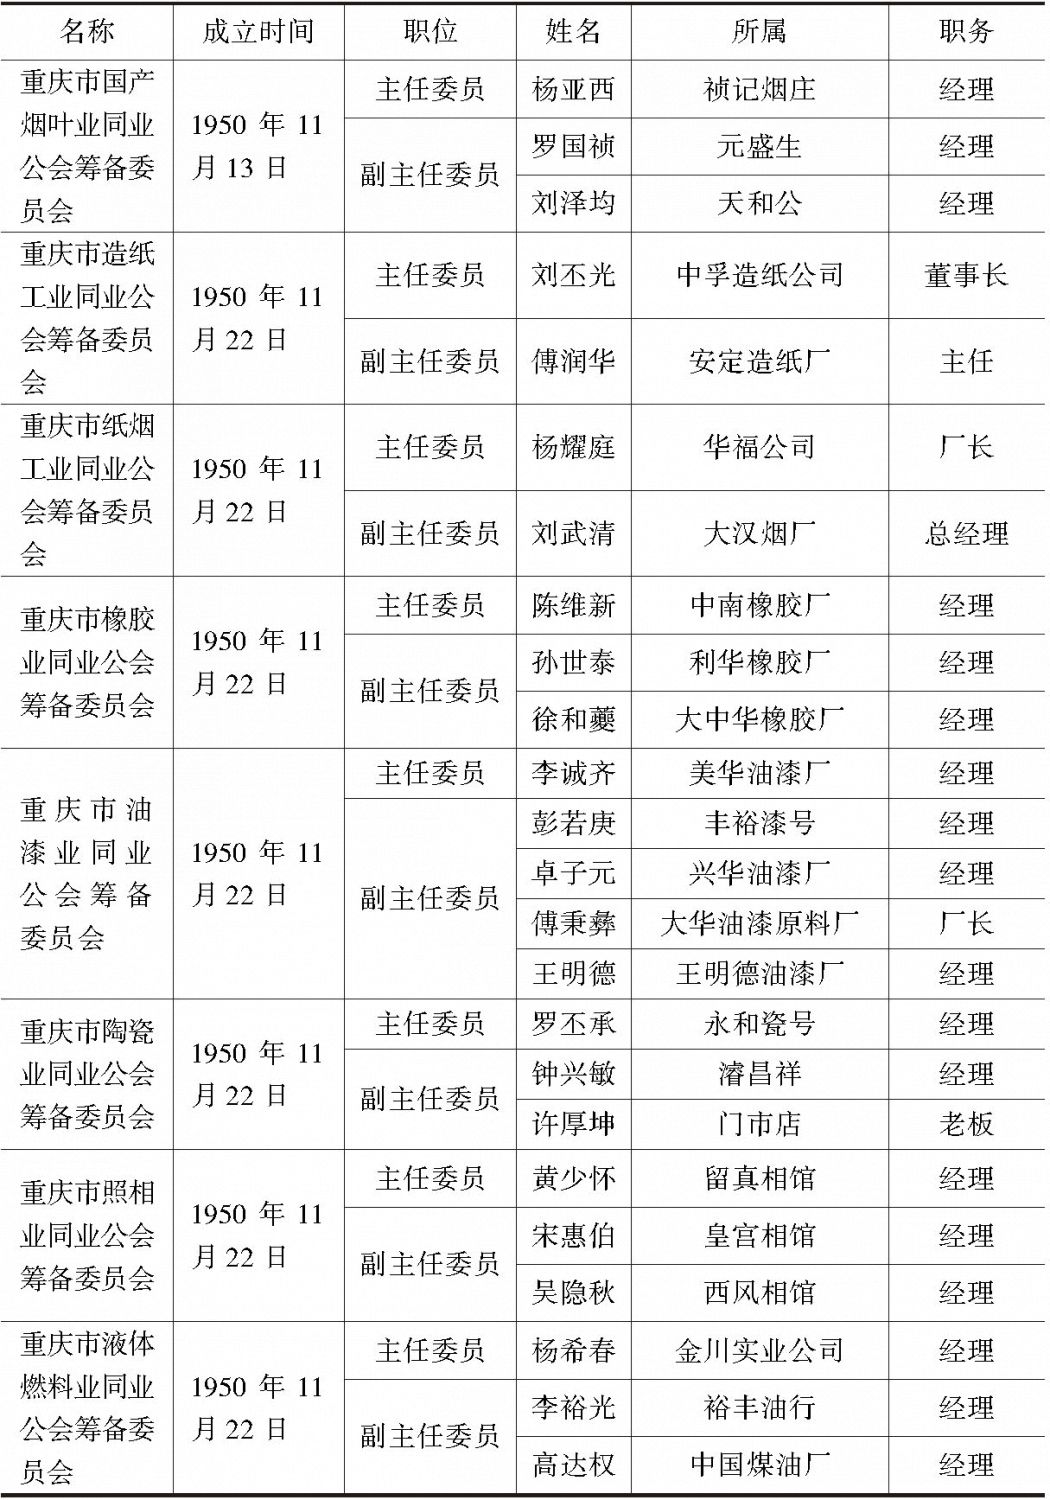 表6-3 重庆市各业同业公会筹备委员会筹备委员一览-续表3